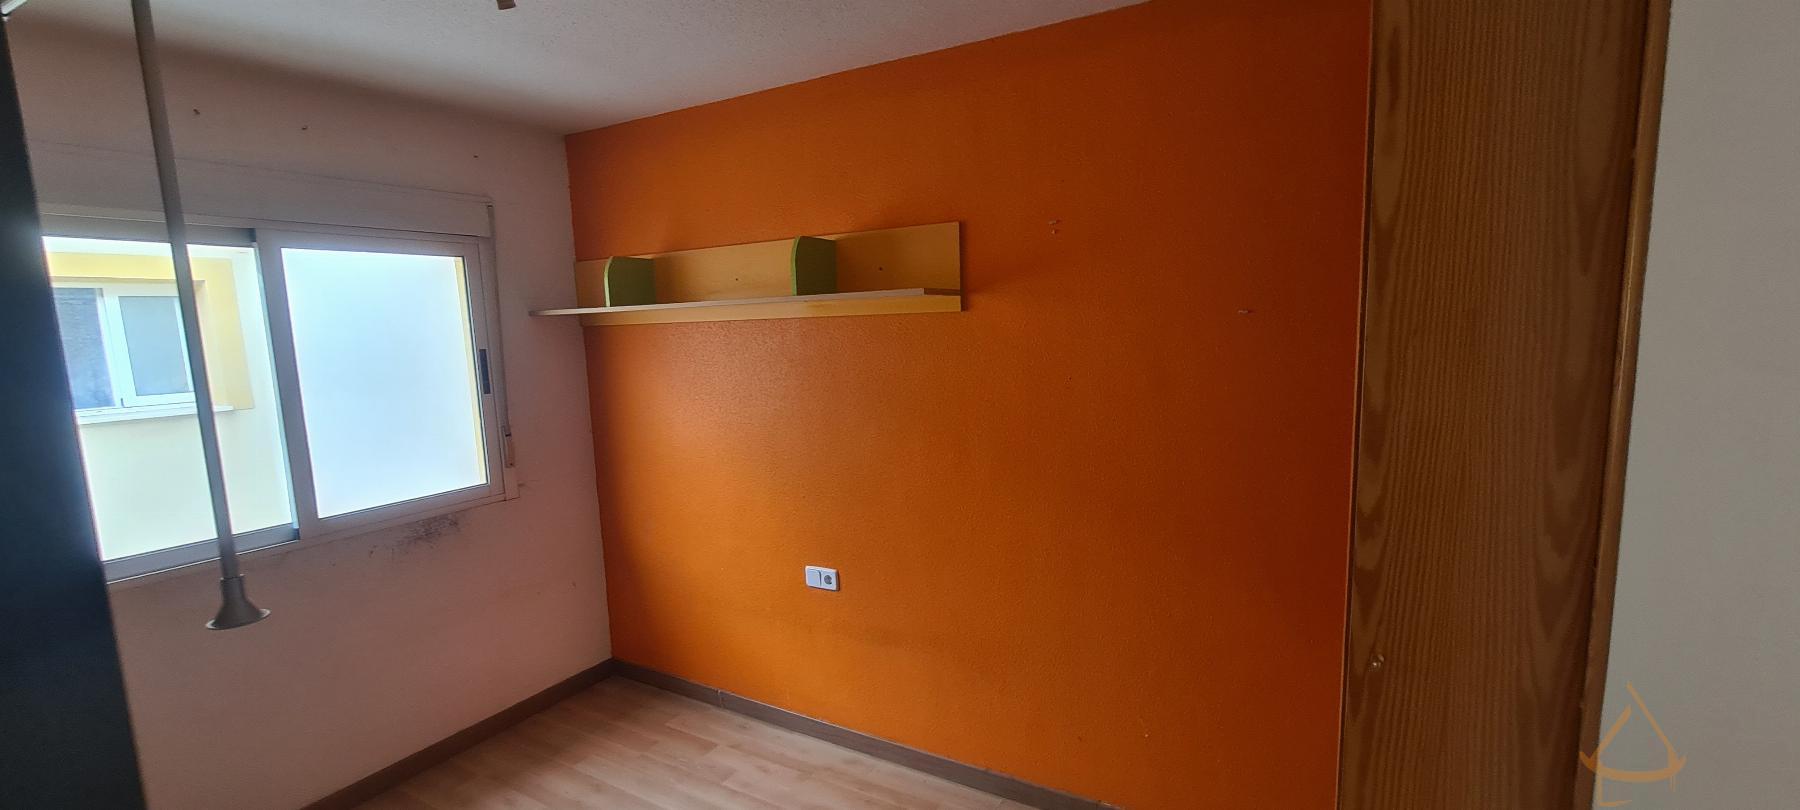 Verkoop van duplex appartement in Torre-Pacheco